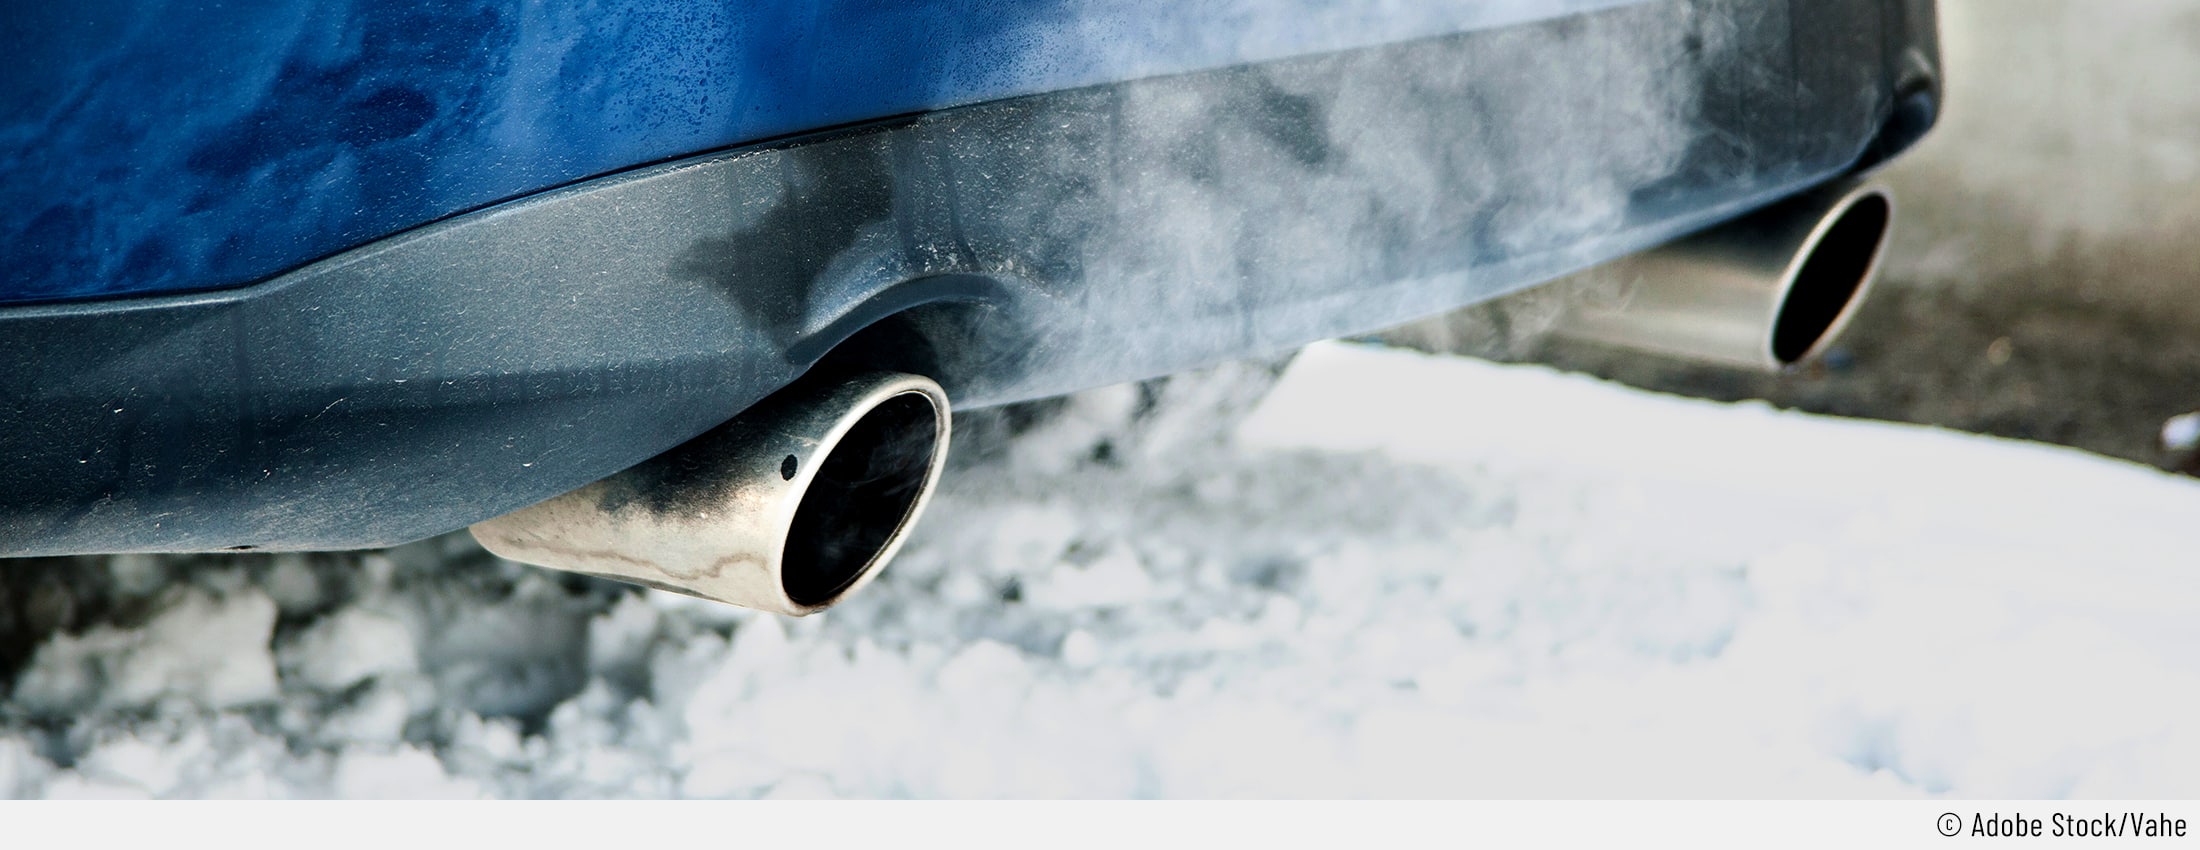 Auf dem Bild ist zu sehen, dass ein Auto auf Schnee steht. Der Fokus ist auf dem Auspuff, aus welchem Rauch kommt, weil jemand das Auto warmlaufen lässt.